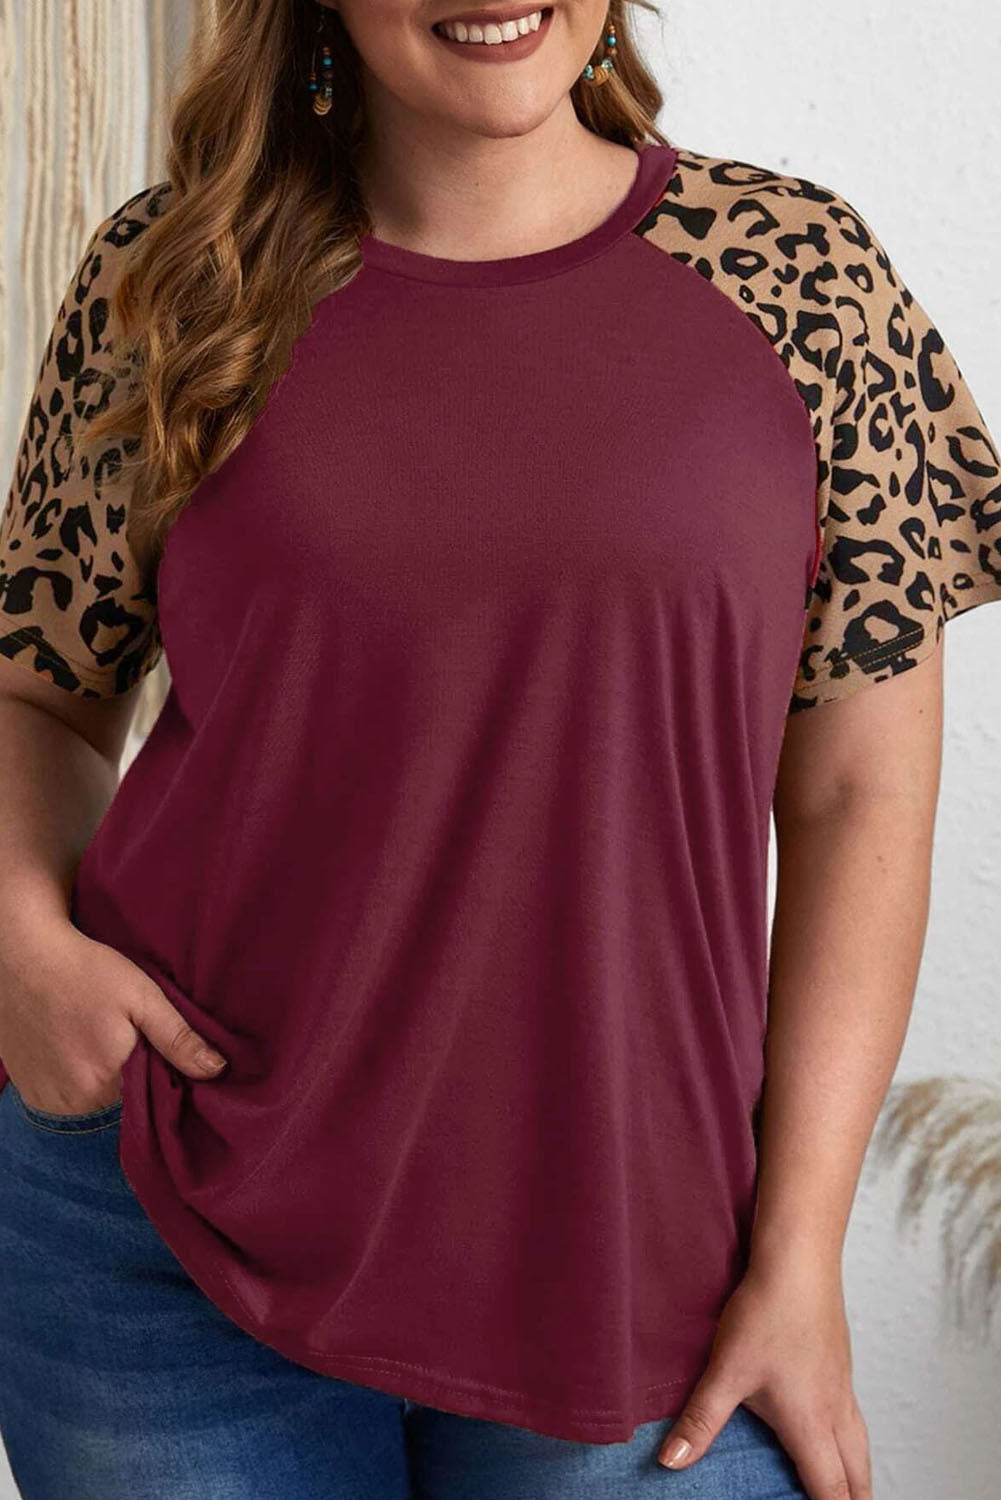 Majica velike velikosti z leopard raglan rokavi v bordo kontrastni barvi